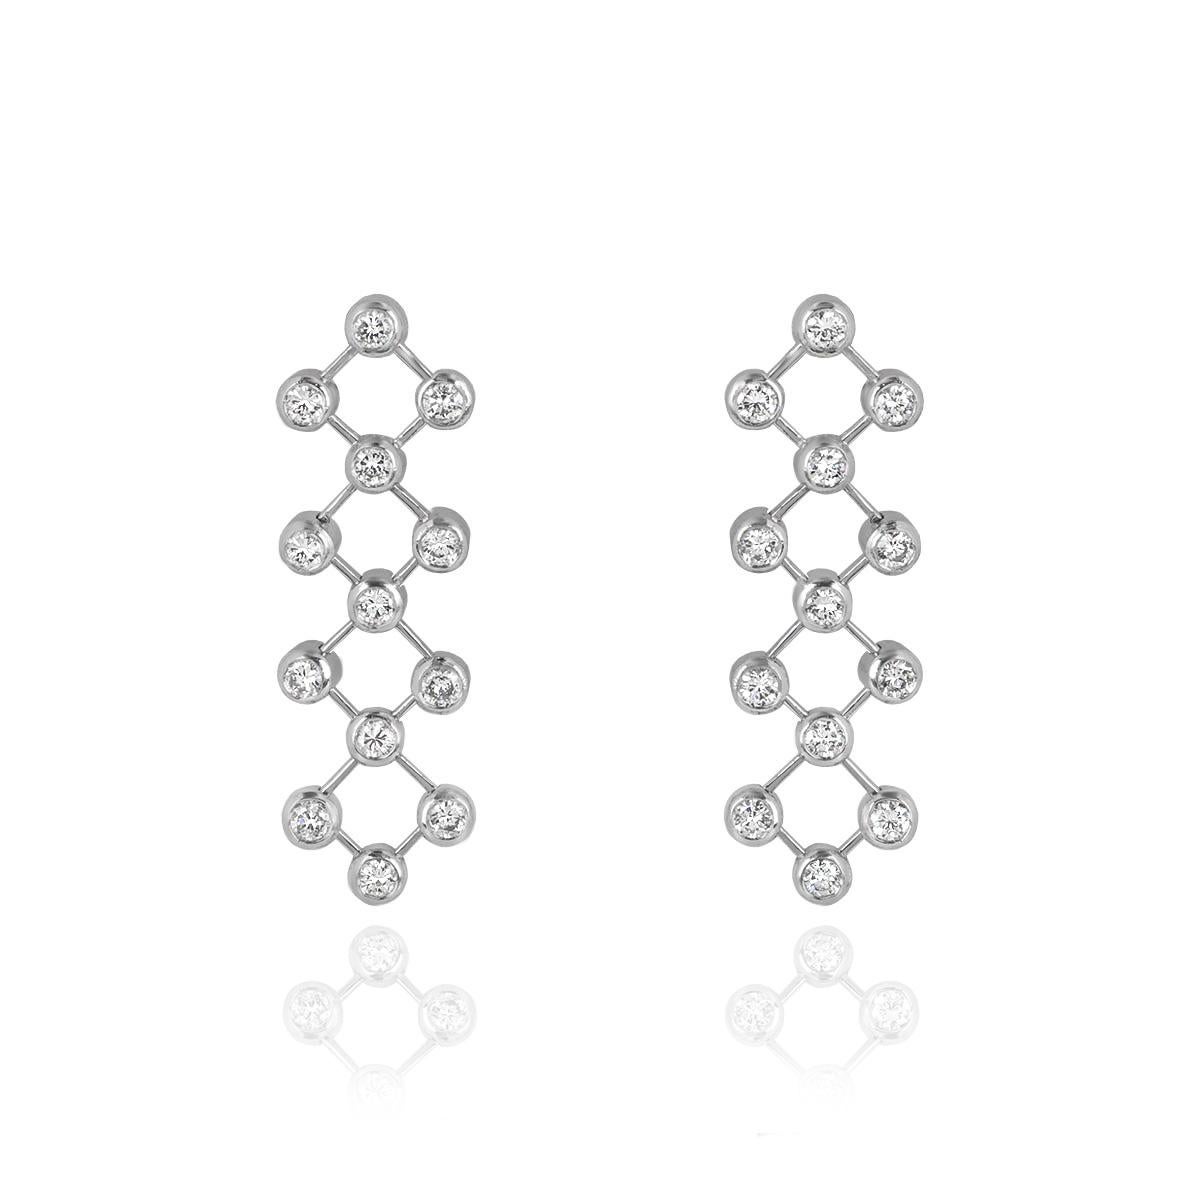 Une superbe paire de boucles d'oreilles en platine et diamants de Tiffany & Co. Les boucles d'oreilles sont serties de diamants ronds de taille brillant dans une monture de type rubover, reliés entre eux par des barres flexibles mobiles. Les 26